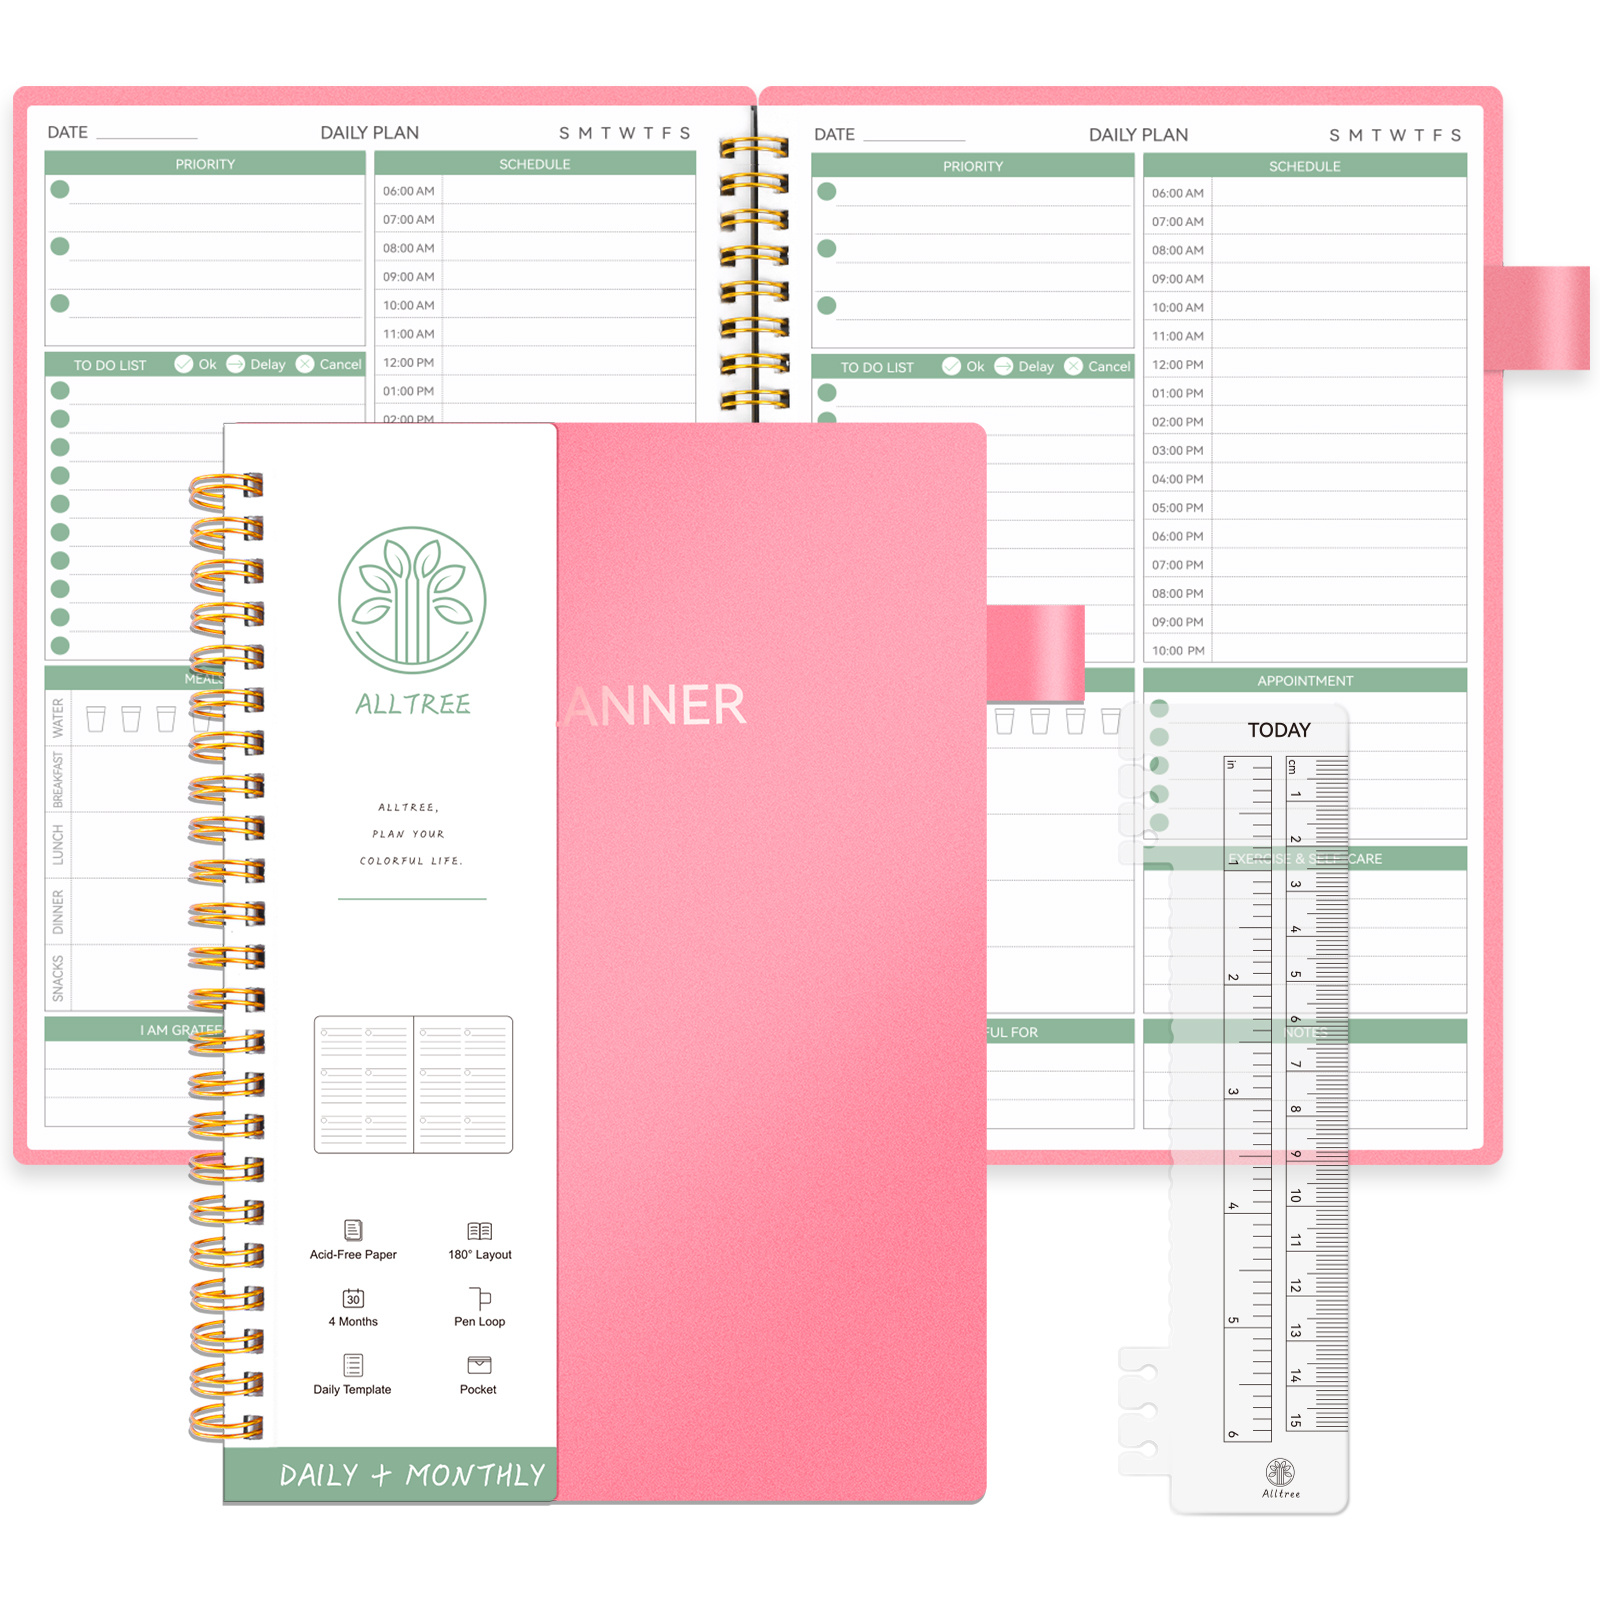 Planificateur journalier - Carnet de notes non daté avec planning horaire,  25,4 x 18,5 cm à spirale, organiseur de rendez-vous avec repas, notes